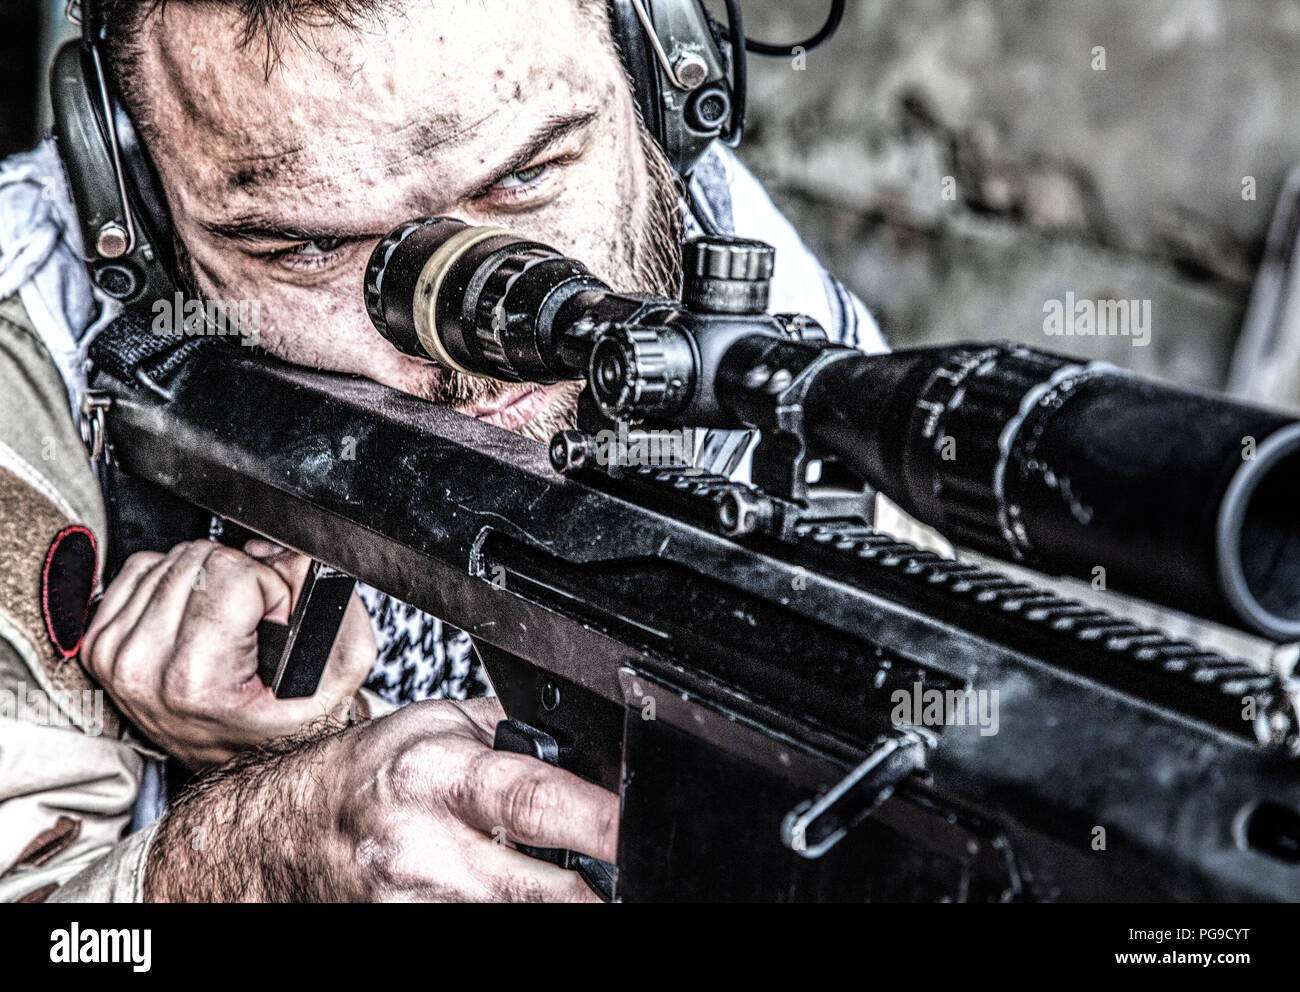 Army Sniper im Kampf Bereitschaft auf Anschlag Stockfoto